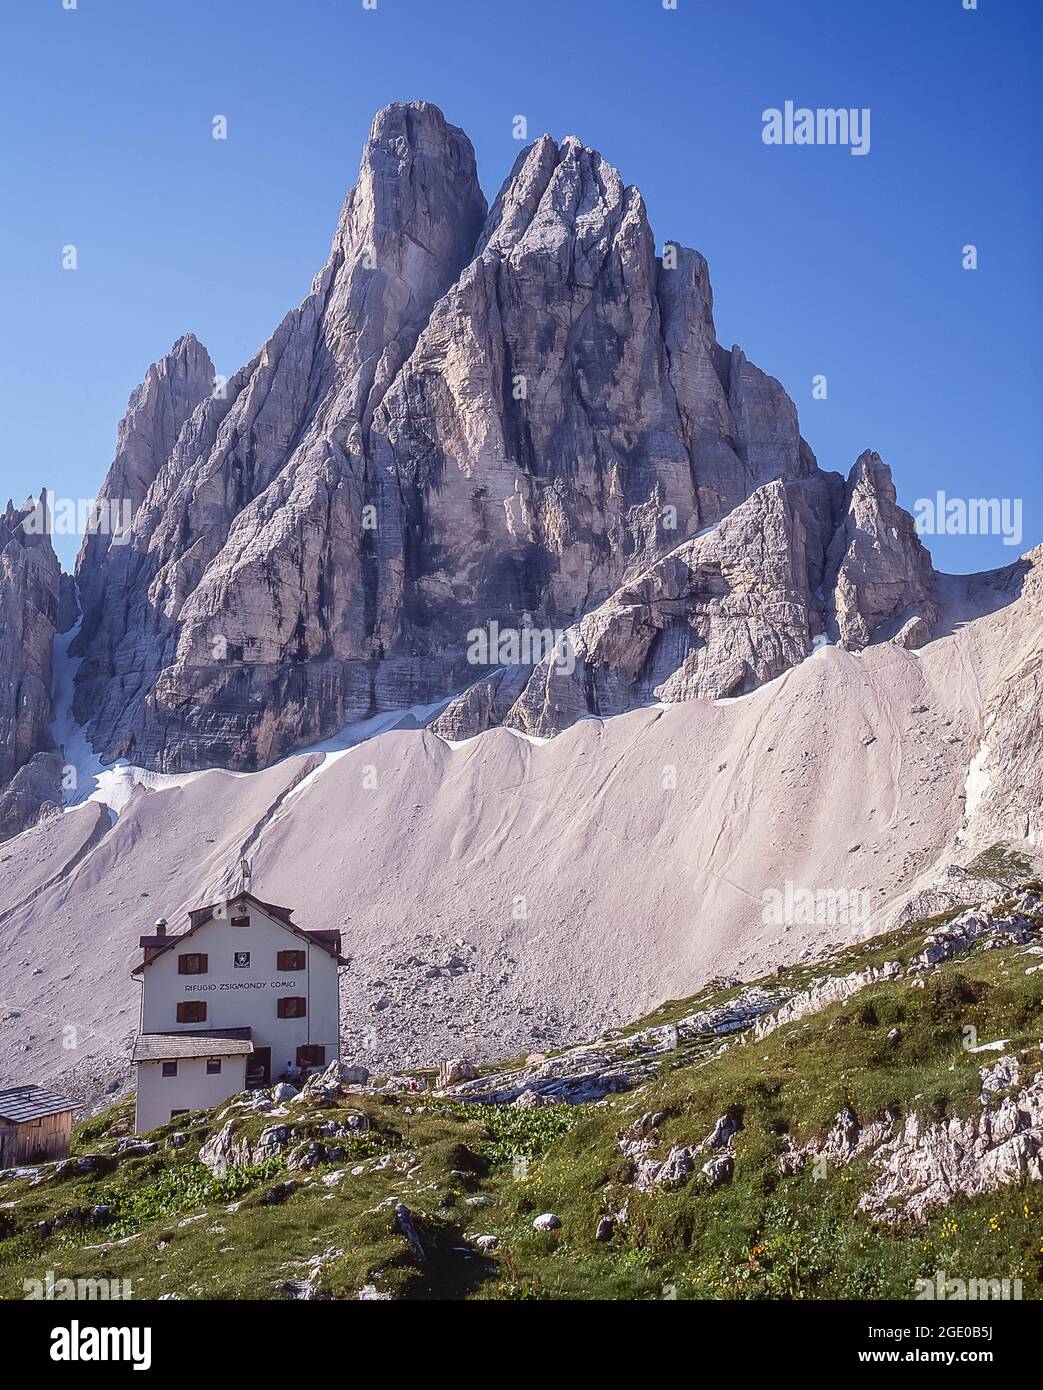 C'est le refuge de montagne Rifugio Comici-Zsigmondy appartenant au Club alpin italien CAI avec le pic formidable du Zwolferkogel dans la région des Dolomites Sexton-Sesto, l'Alto Adige du Sud Tyrol, non loin de la station balnéaire de Cortina d'Ampezzo Banque D'Images